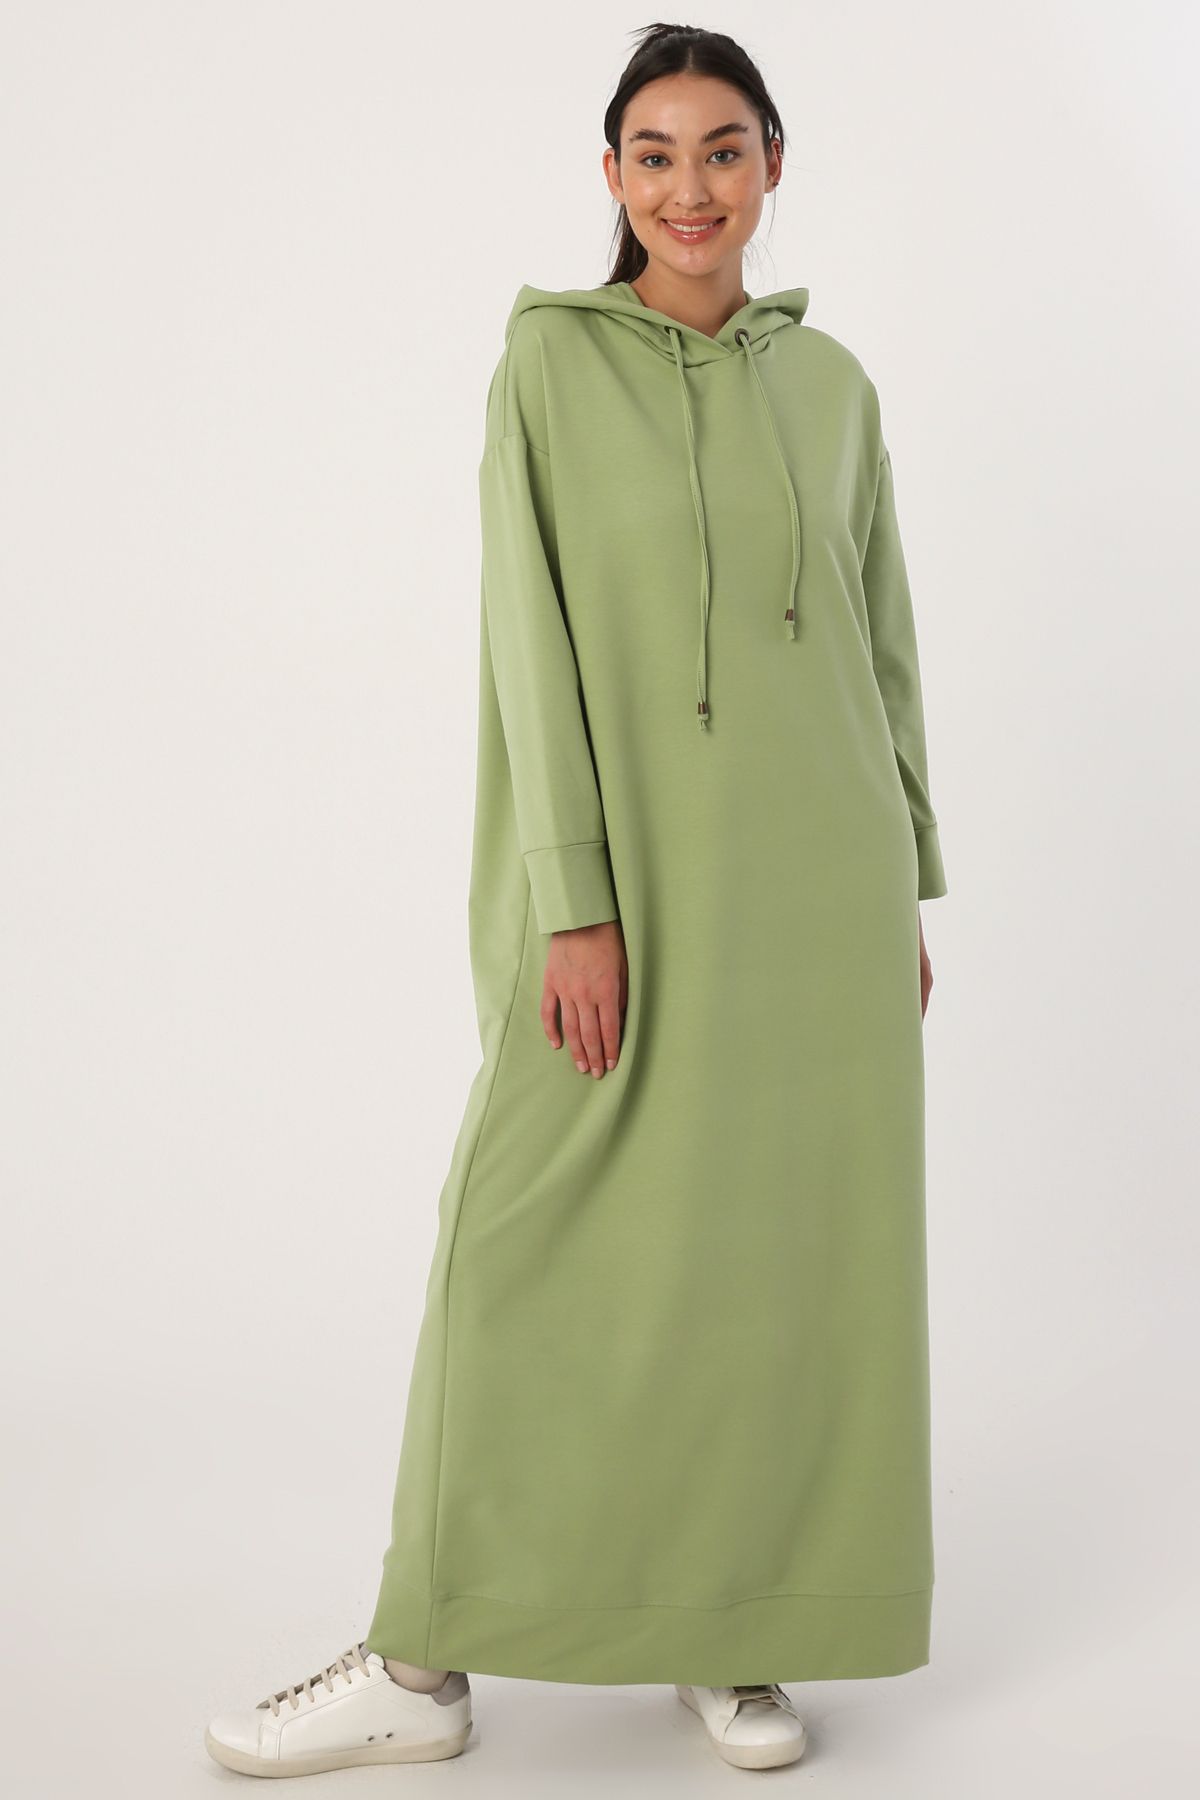 ALLDAY Açık Yeşil Basic Kapüşonlu Örme Pamuklu Elbise